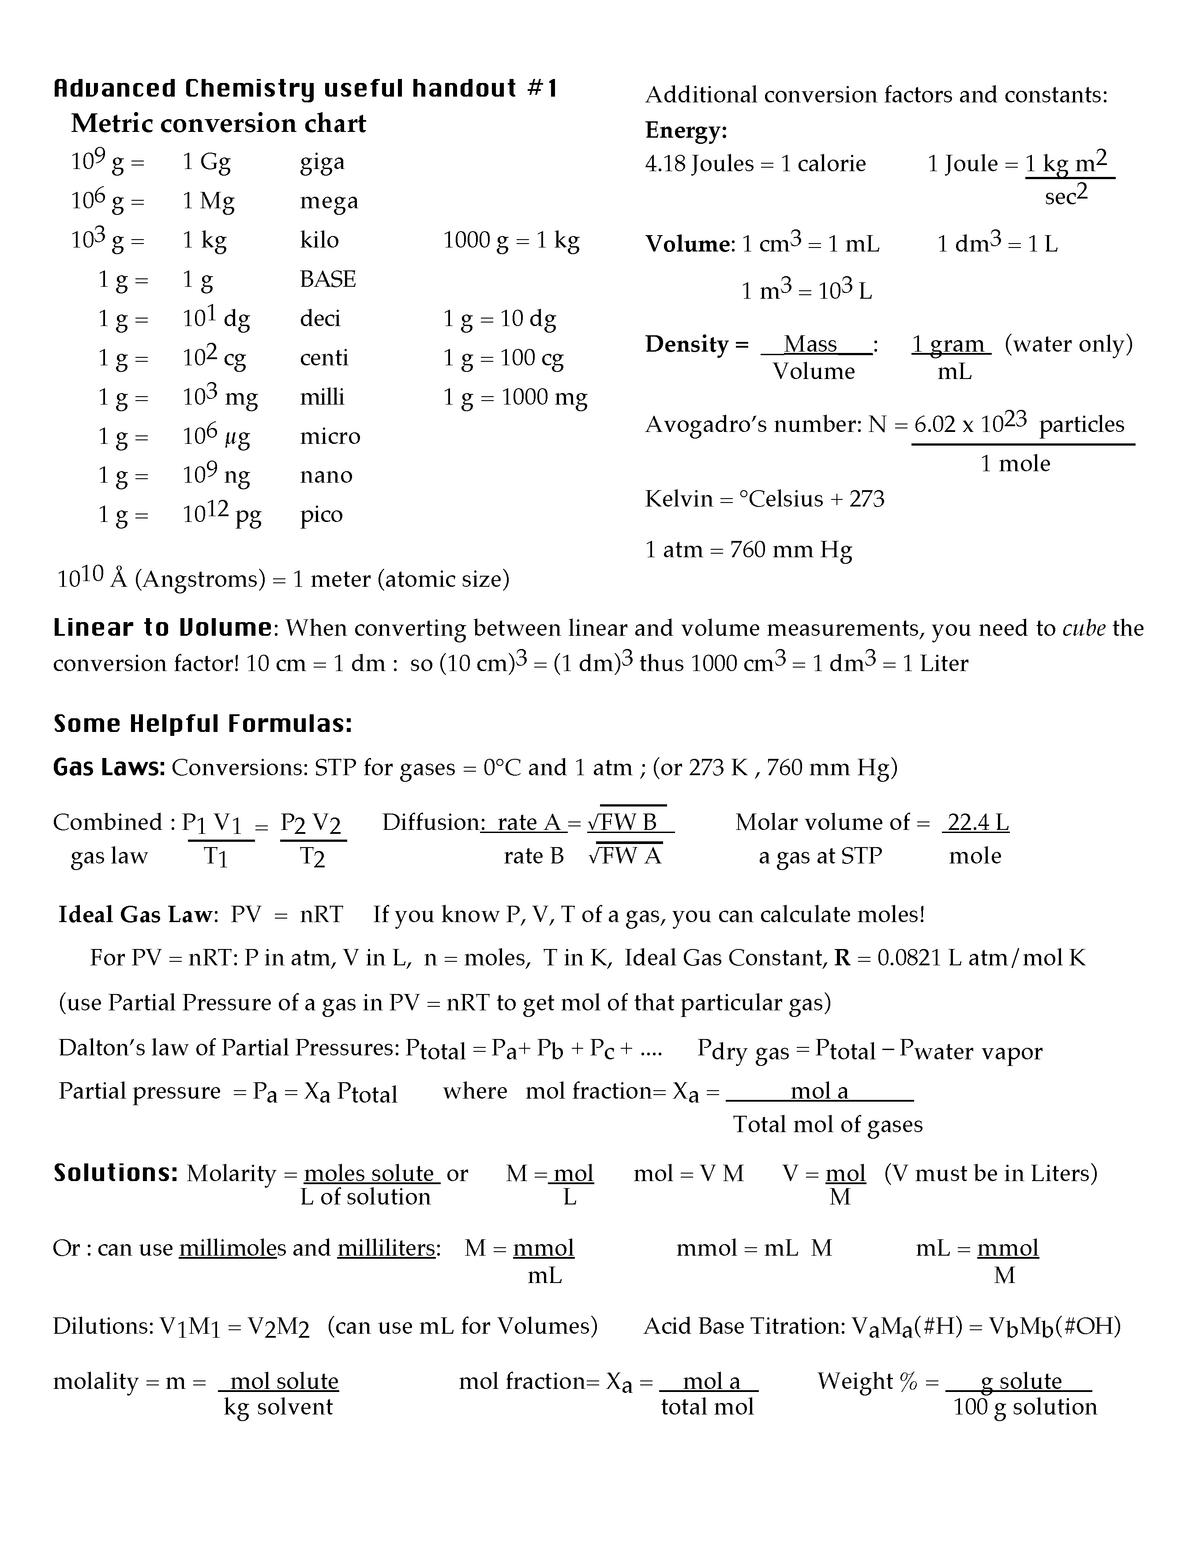 chemistry-conversion-chart-cheat-sheet